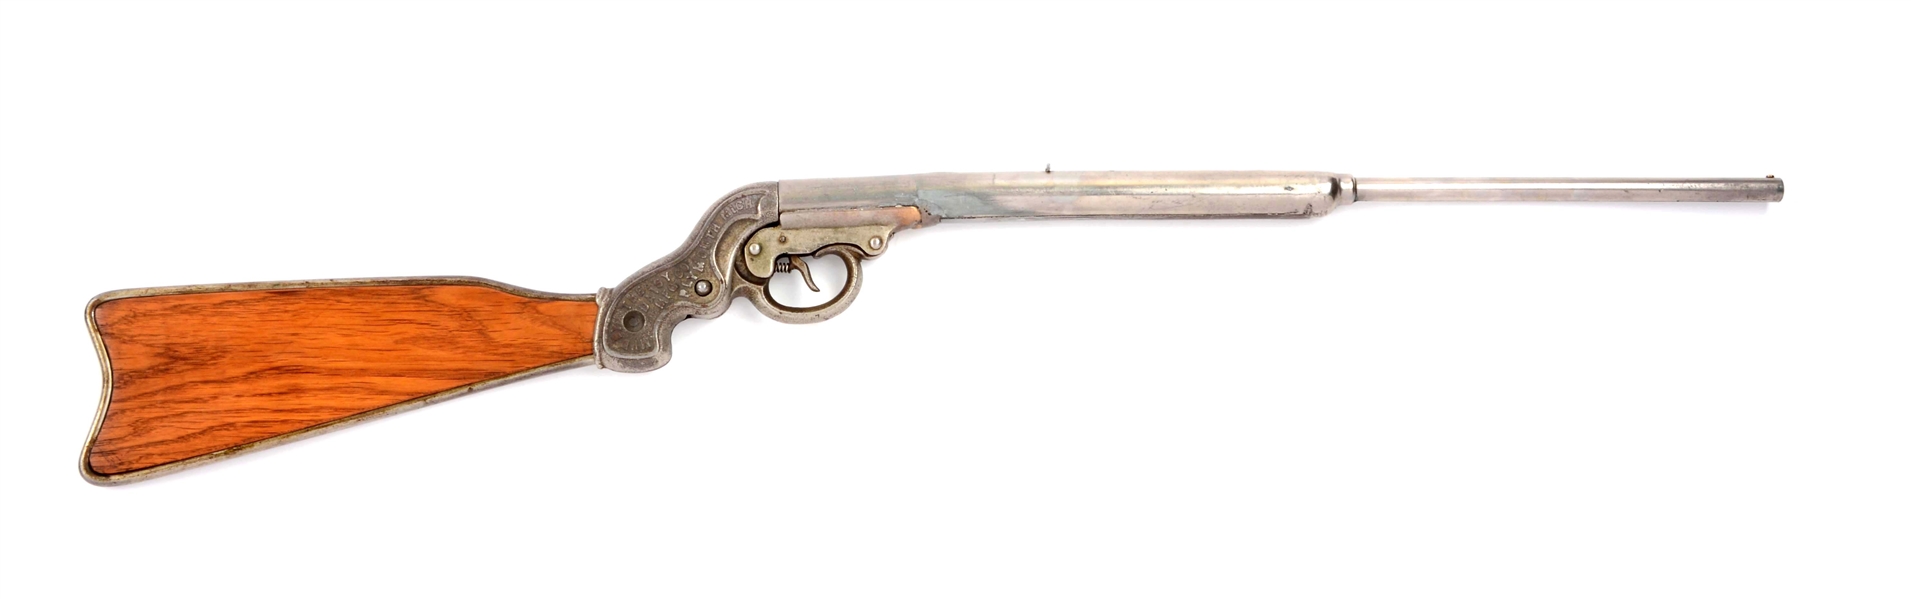 RARE DAISY PRE-1900 CAST METAL FRAME 3RD MODEL AIR GUN (1893-1894).